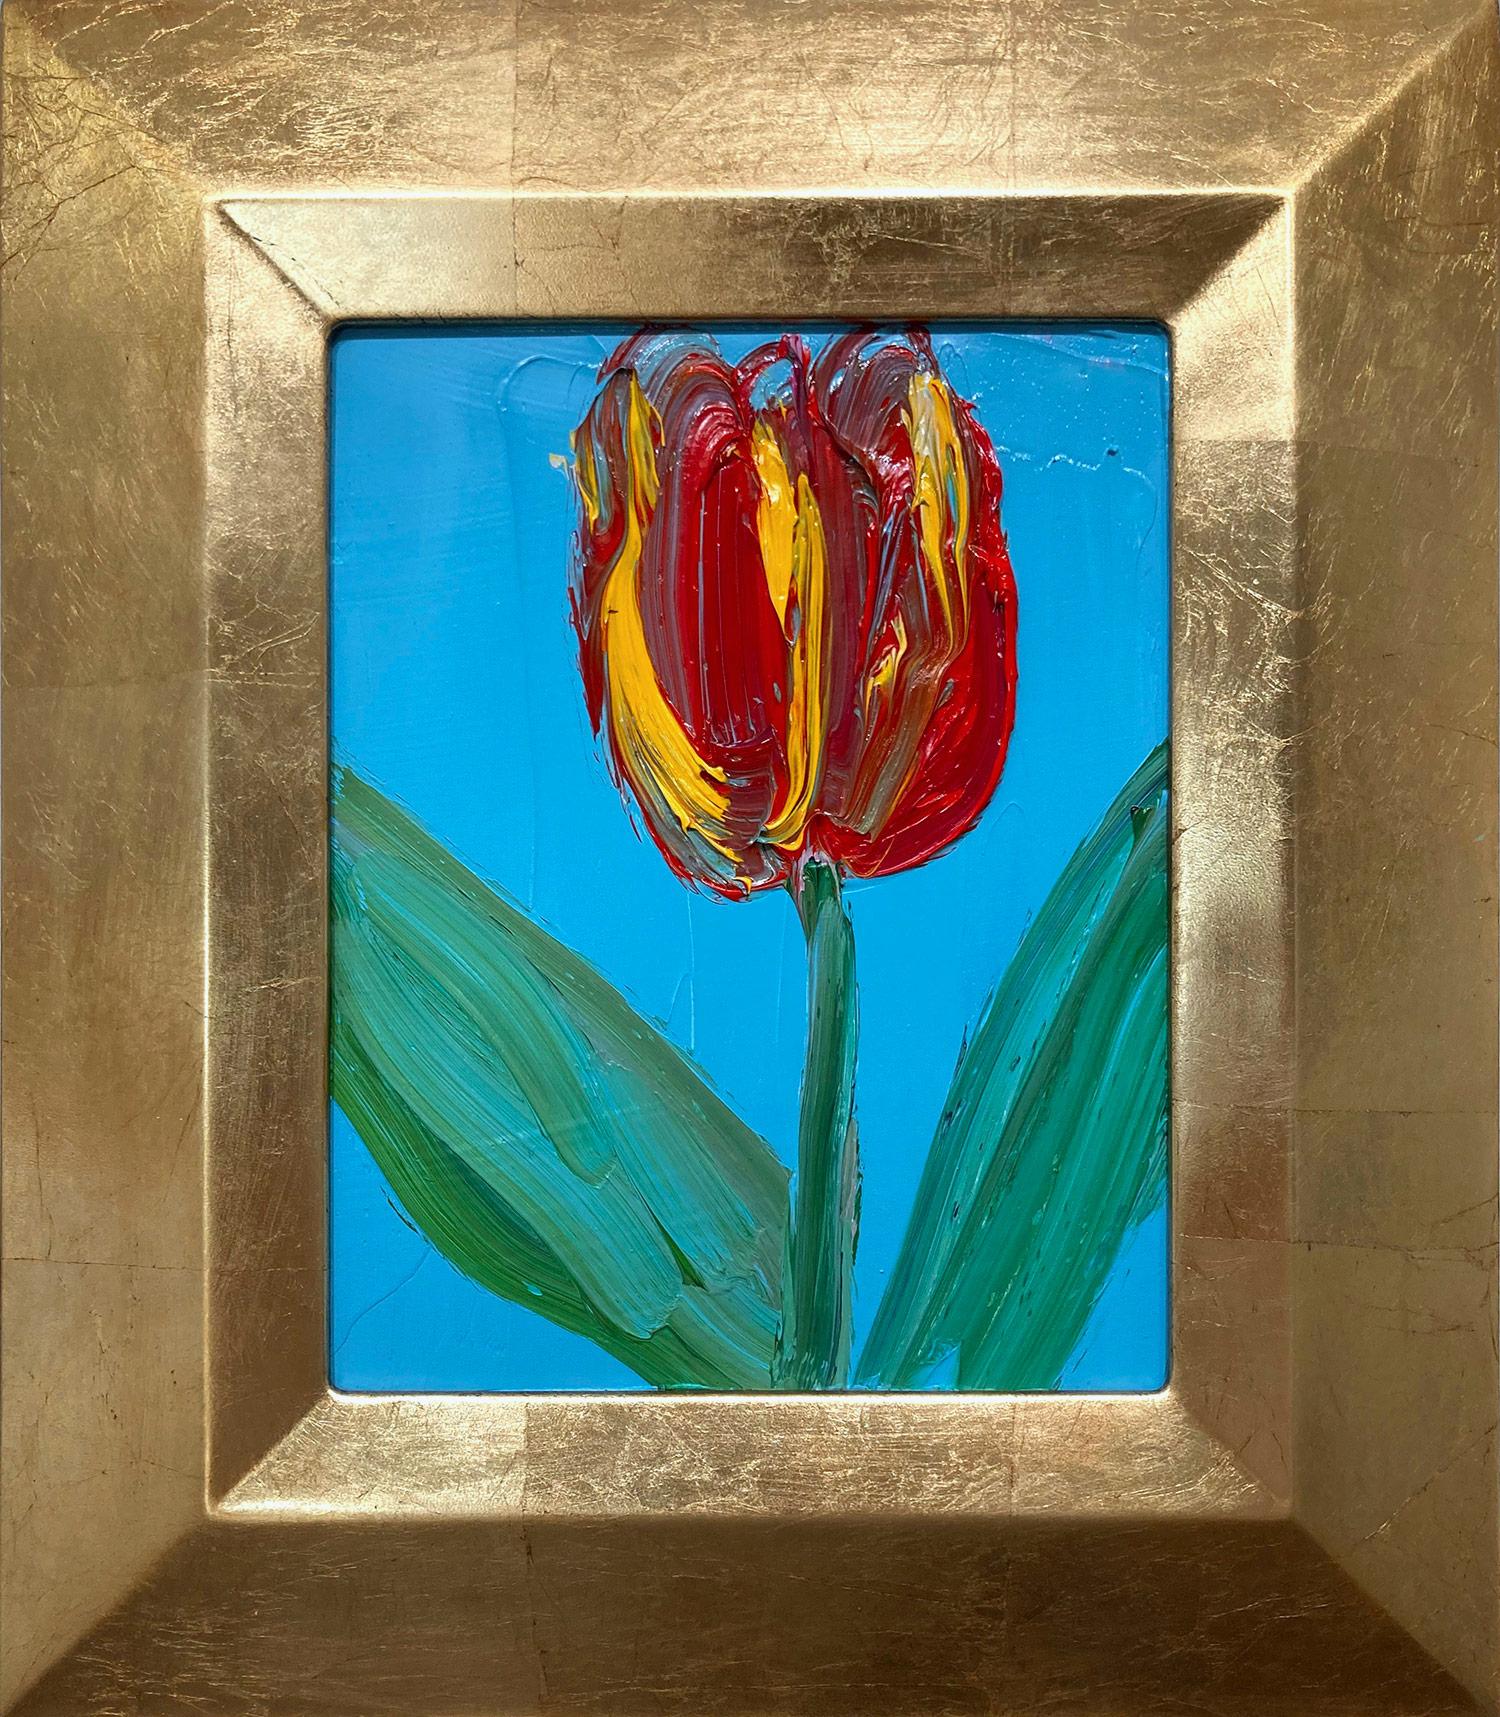 Abstract Painting Hunt Slonem - Peinture à l'huile Talley, tulipe rouge et jaune sur fond bleu céruléen